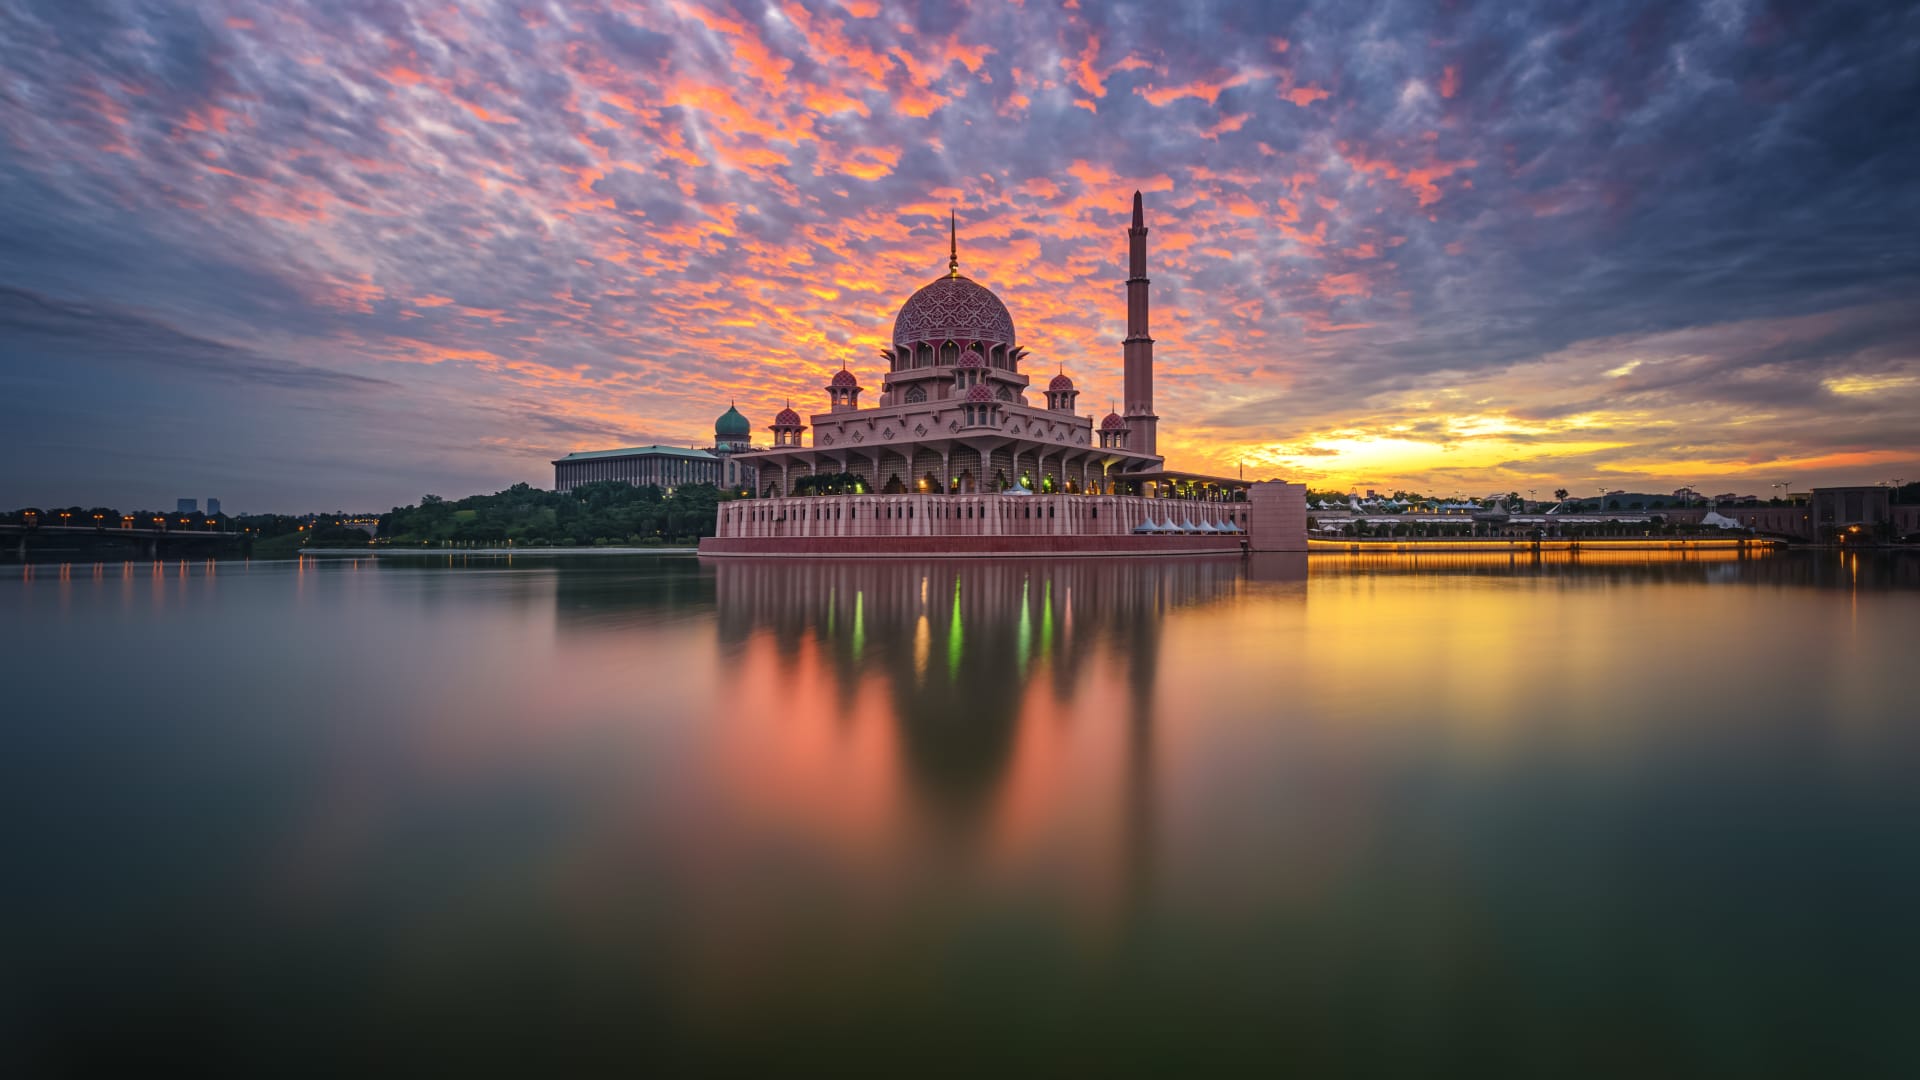 مسجد بوترا في بوتراجايا، ماليزيا، بعدسة المصور العراقي أوس زهير سمين.